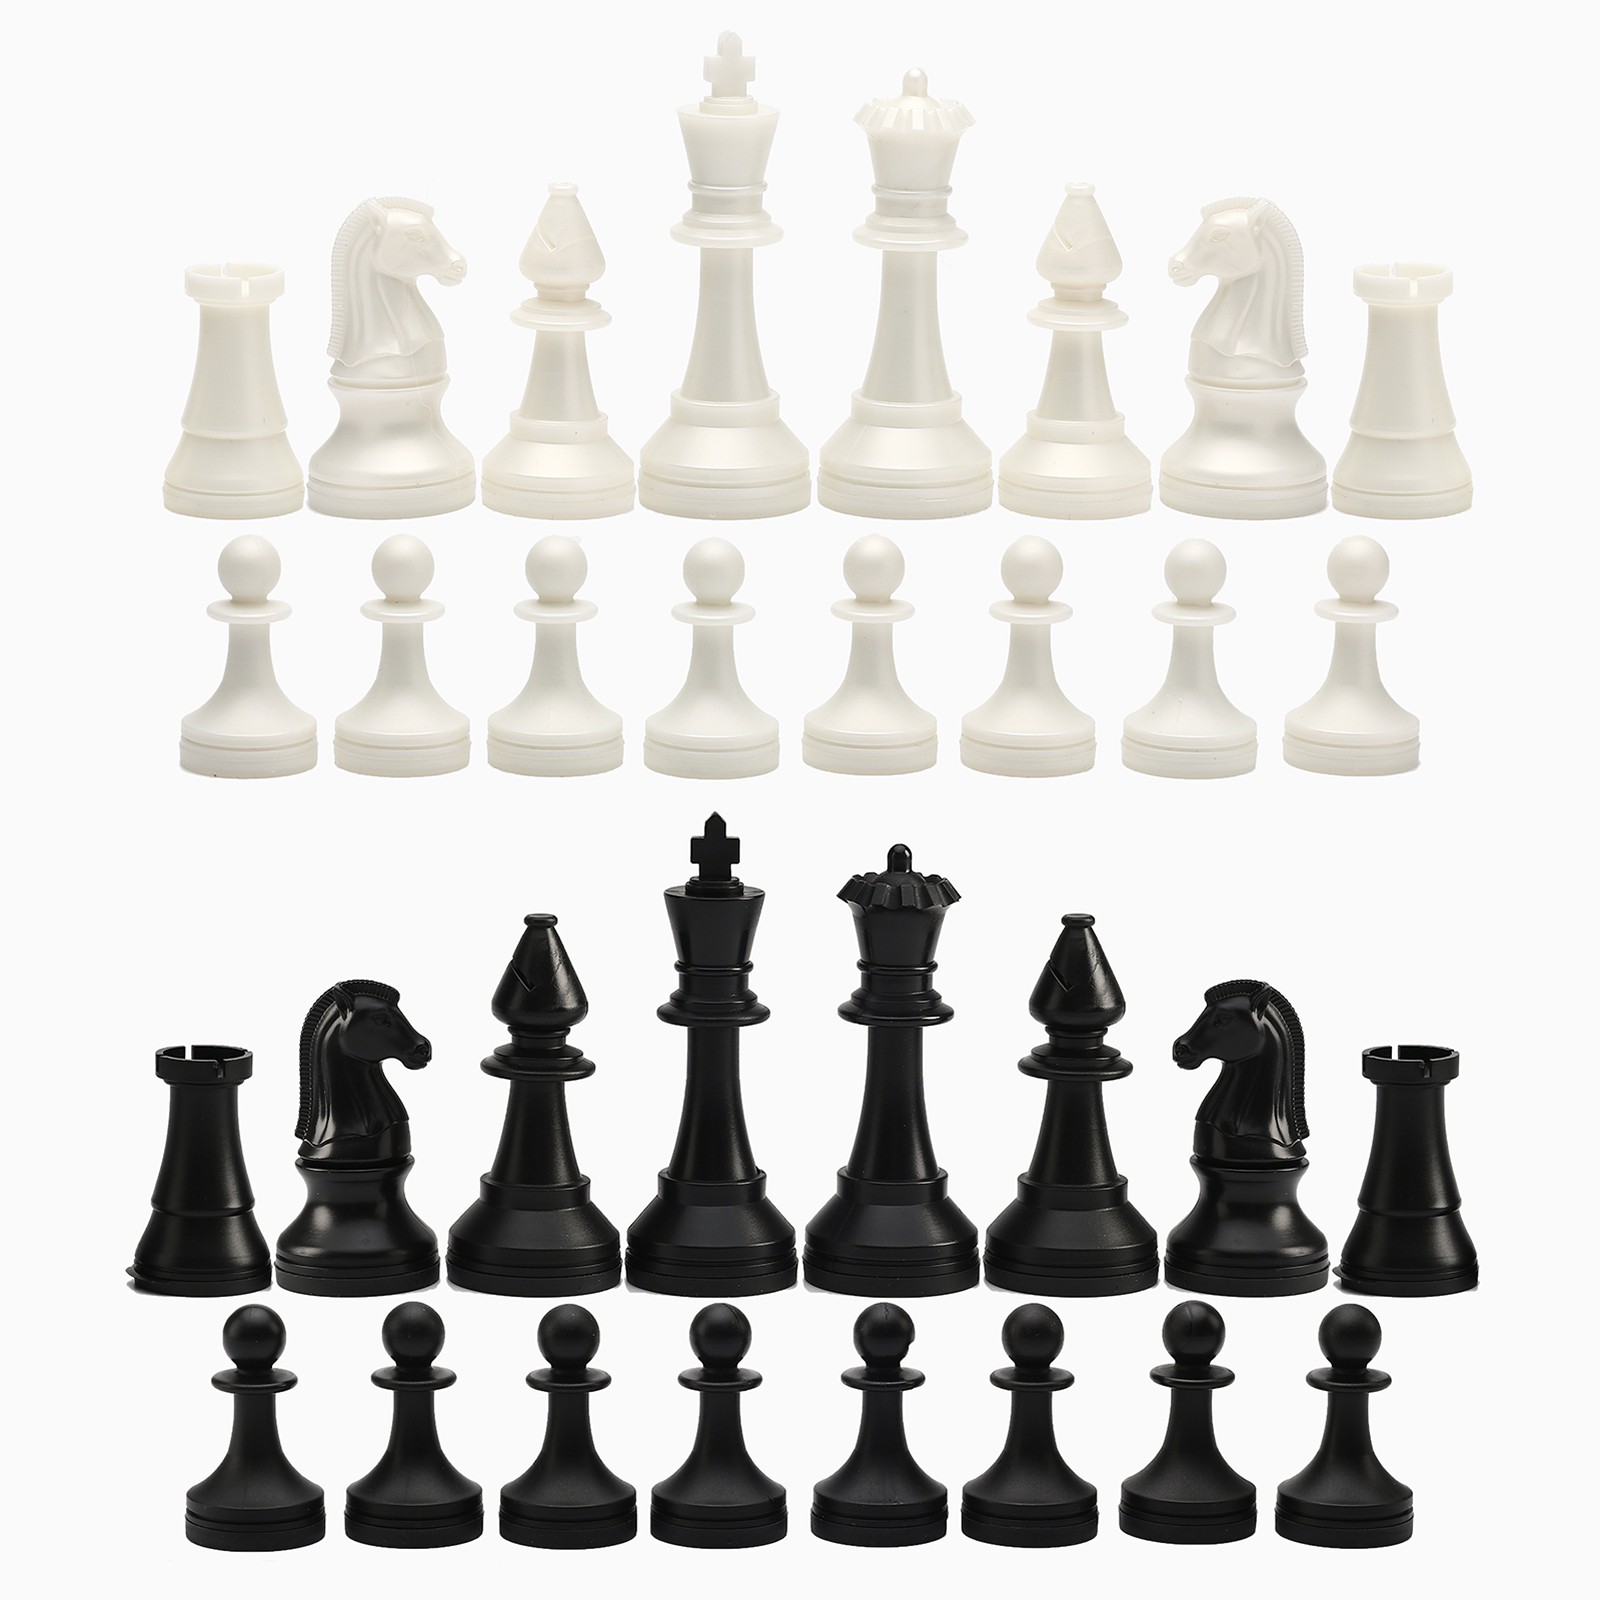 Шахматные фигуры Sima-Land турнирные пластик король h 10.5 см пешка h 5 см - фото 2